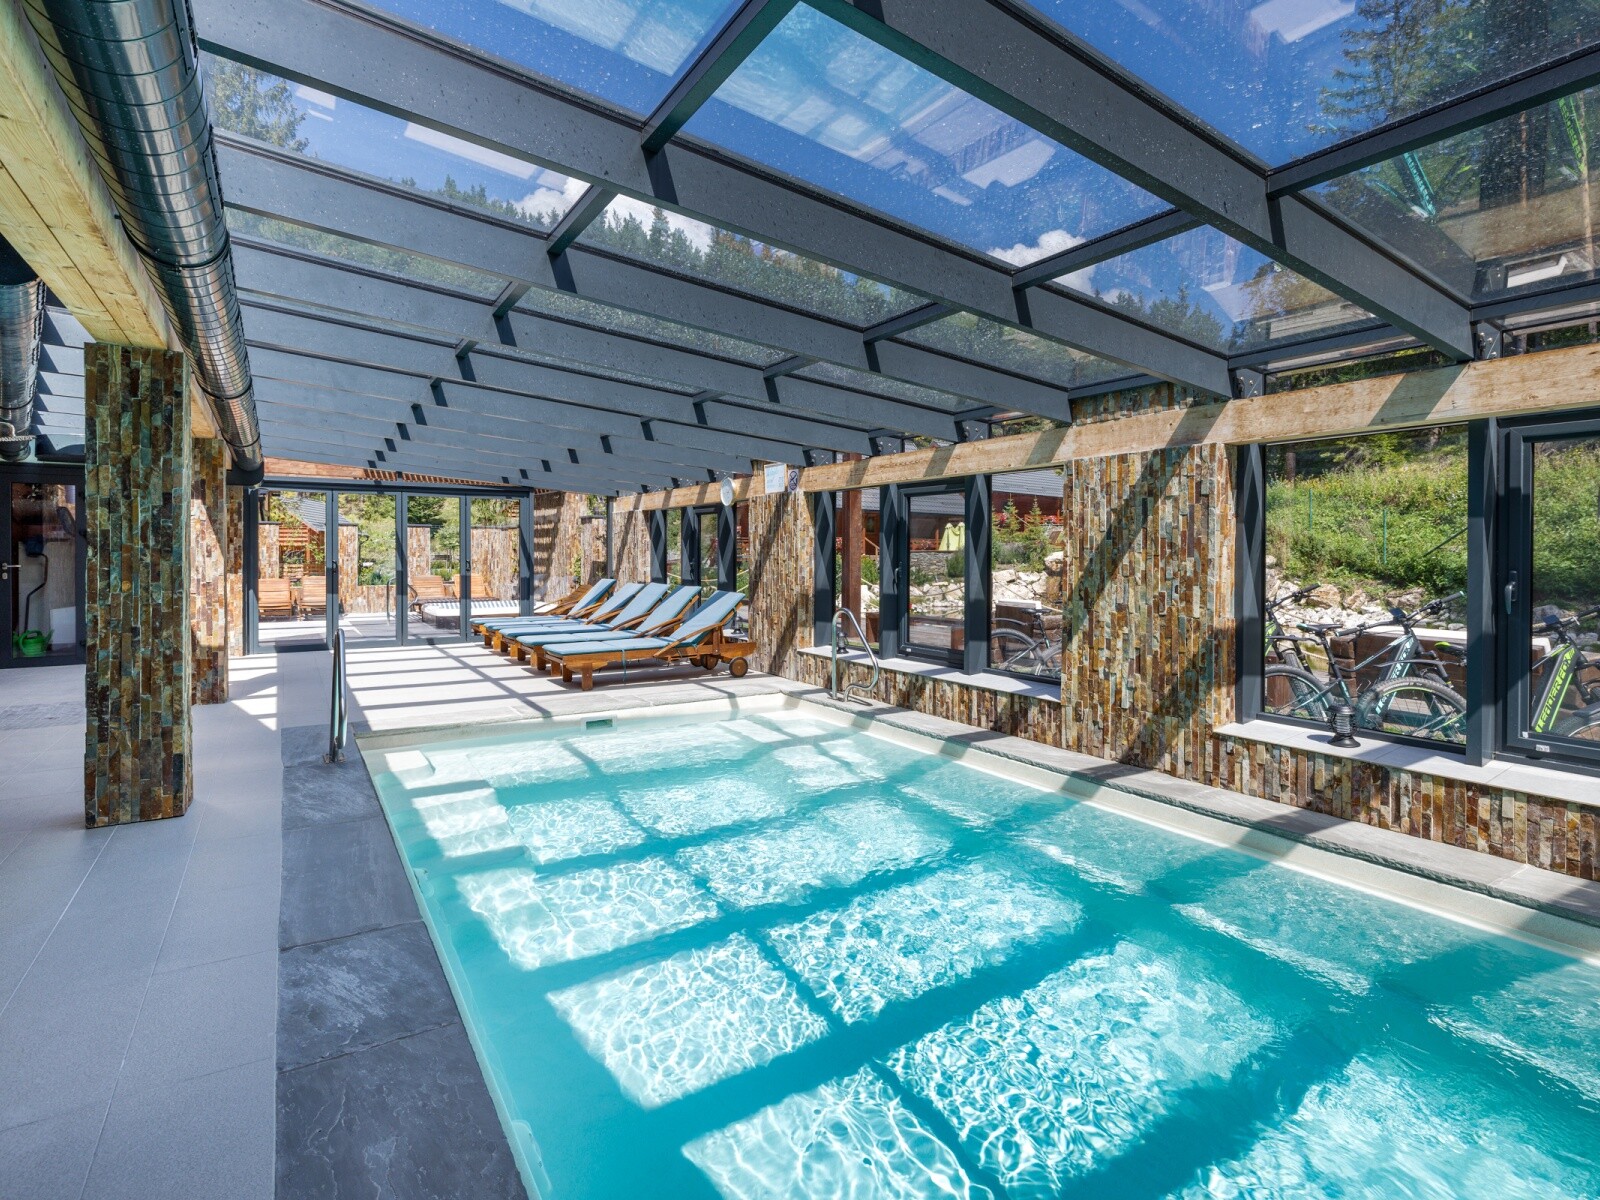 Lopušná dolina resort rekreačný poukaz pobyt rodinná dovolenka wellness bazén